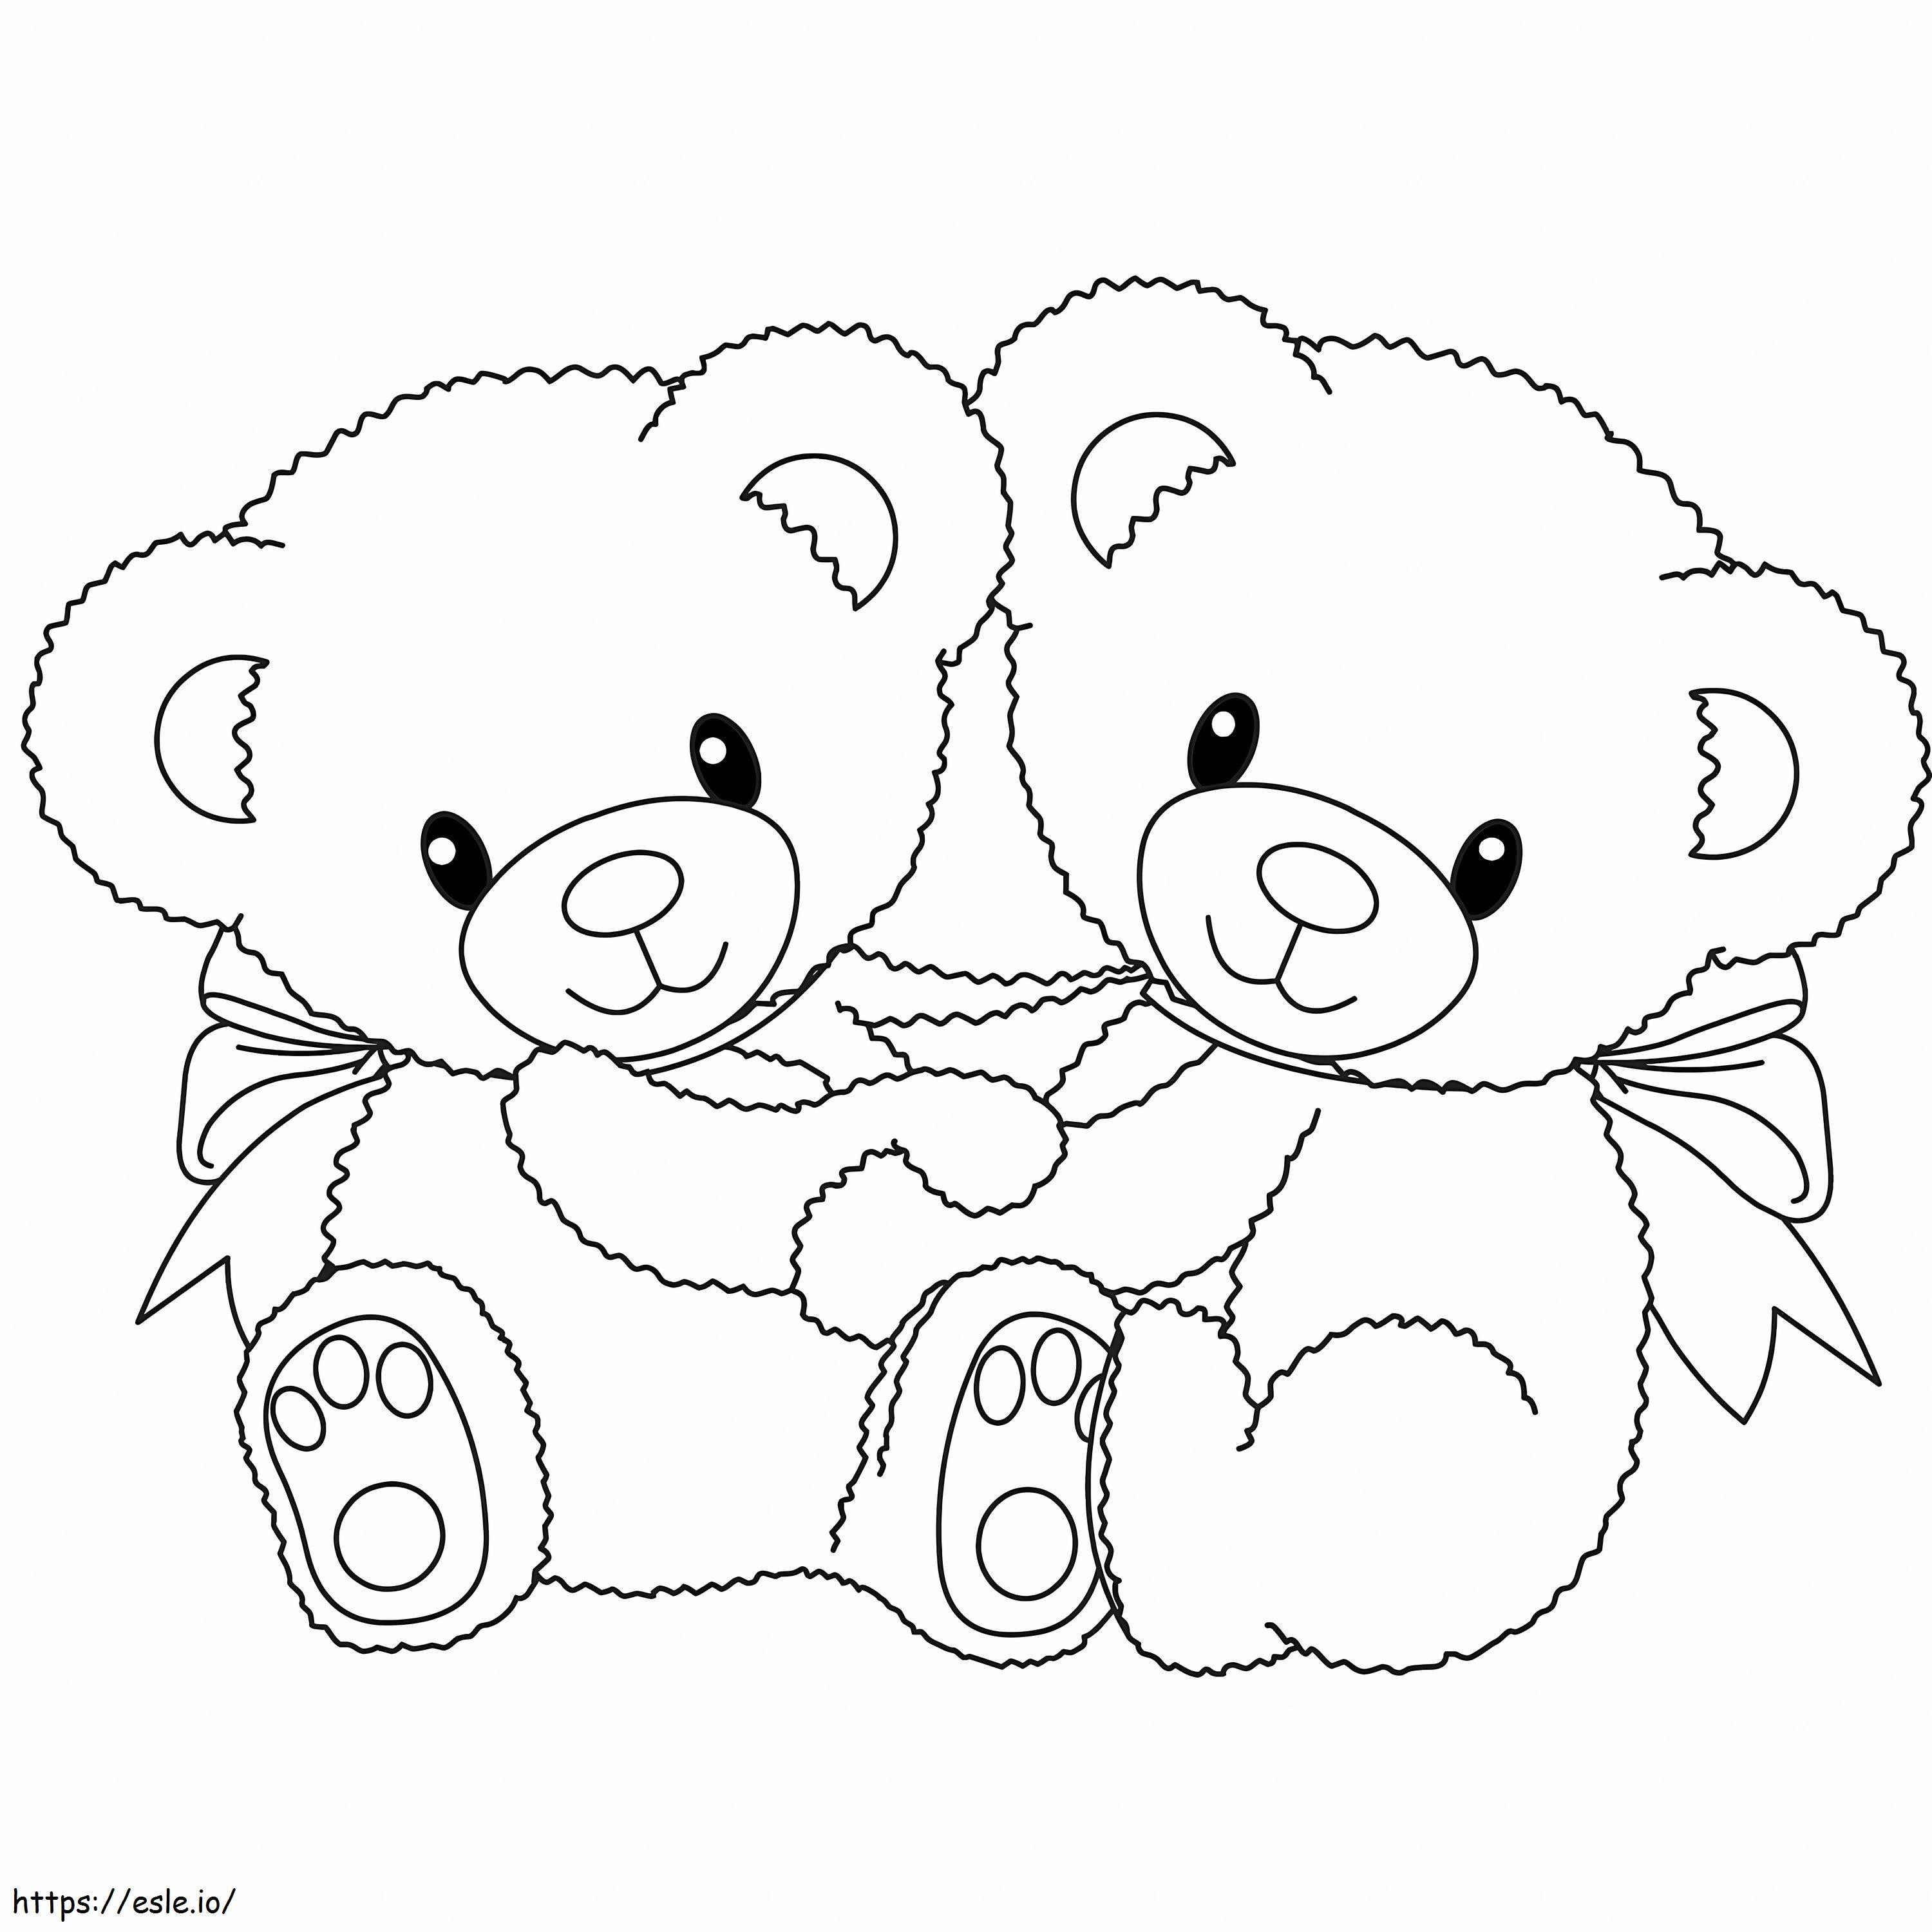 Dois ursinhos de pelúcia para colorir